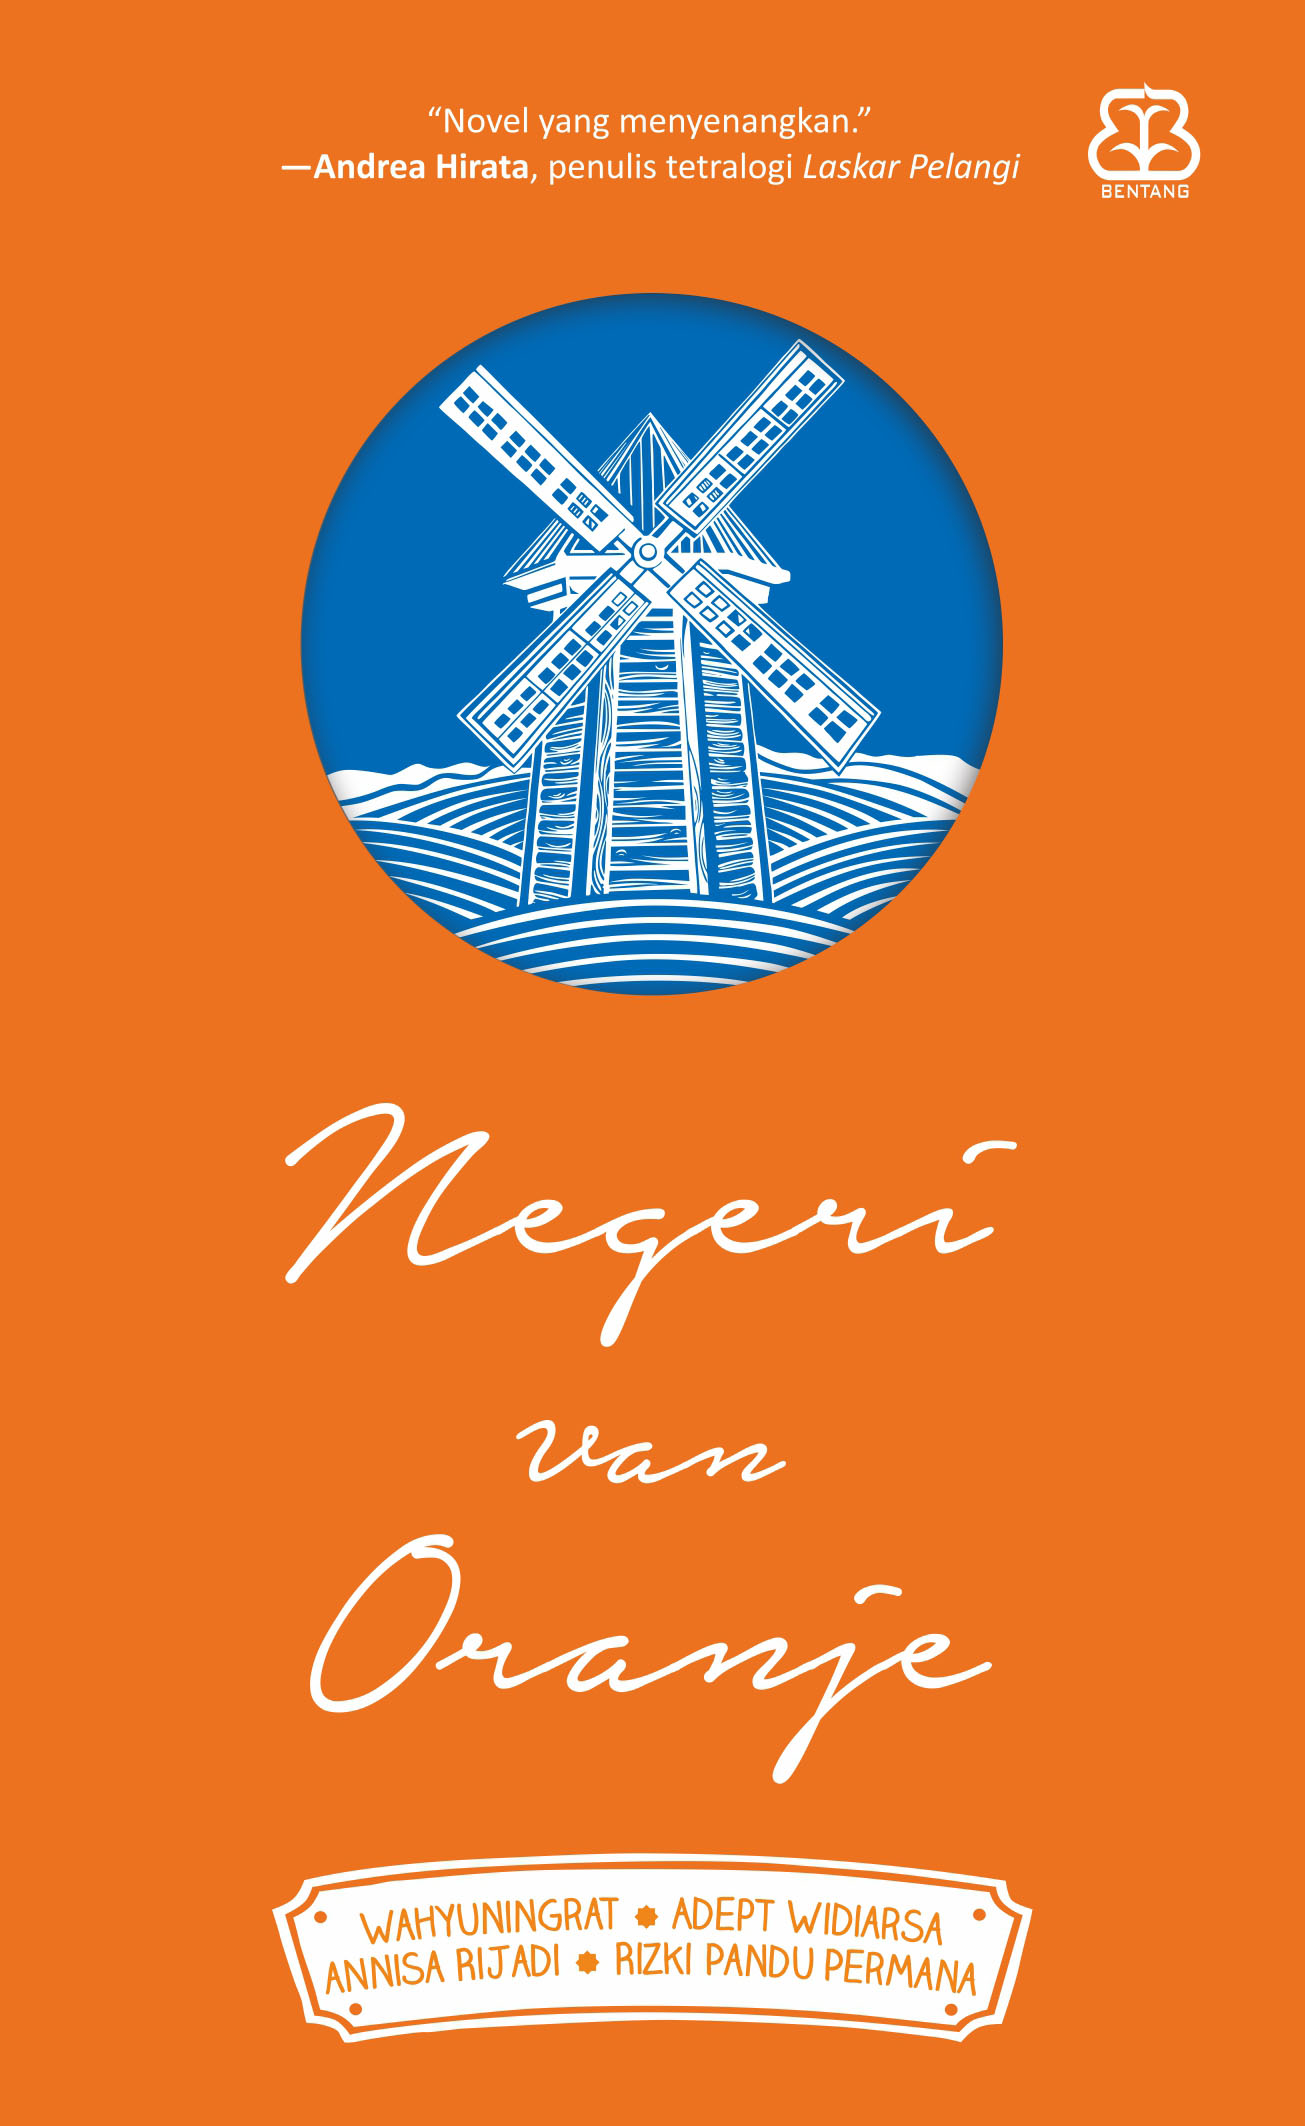 'Negeri Van Oranje' Dari Sekedar Coretan Hingga Jadi Karya 